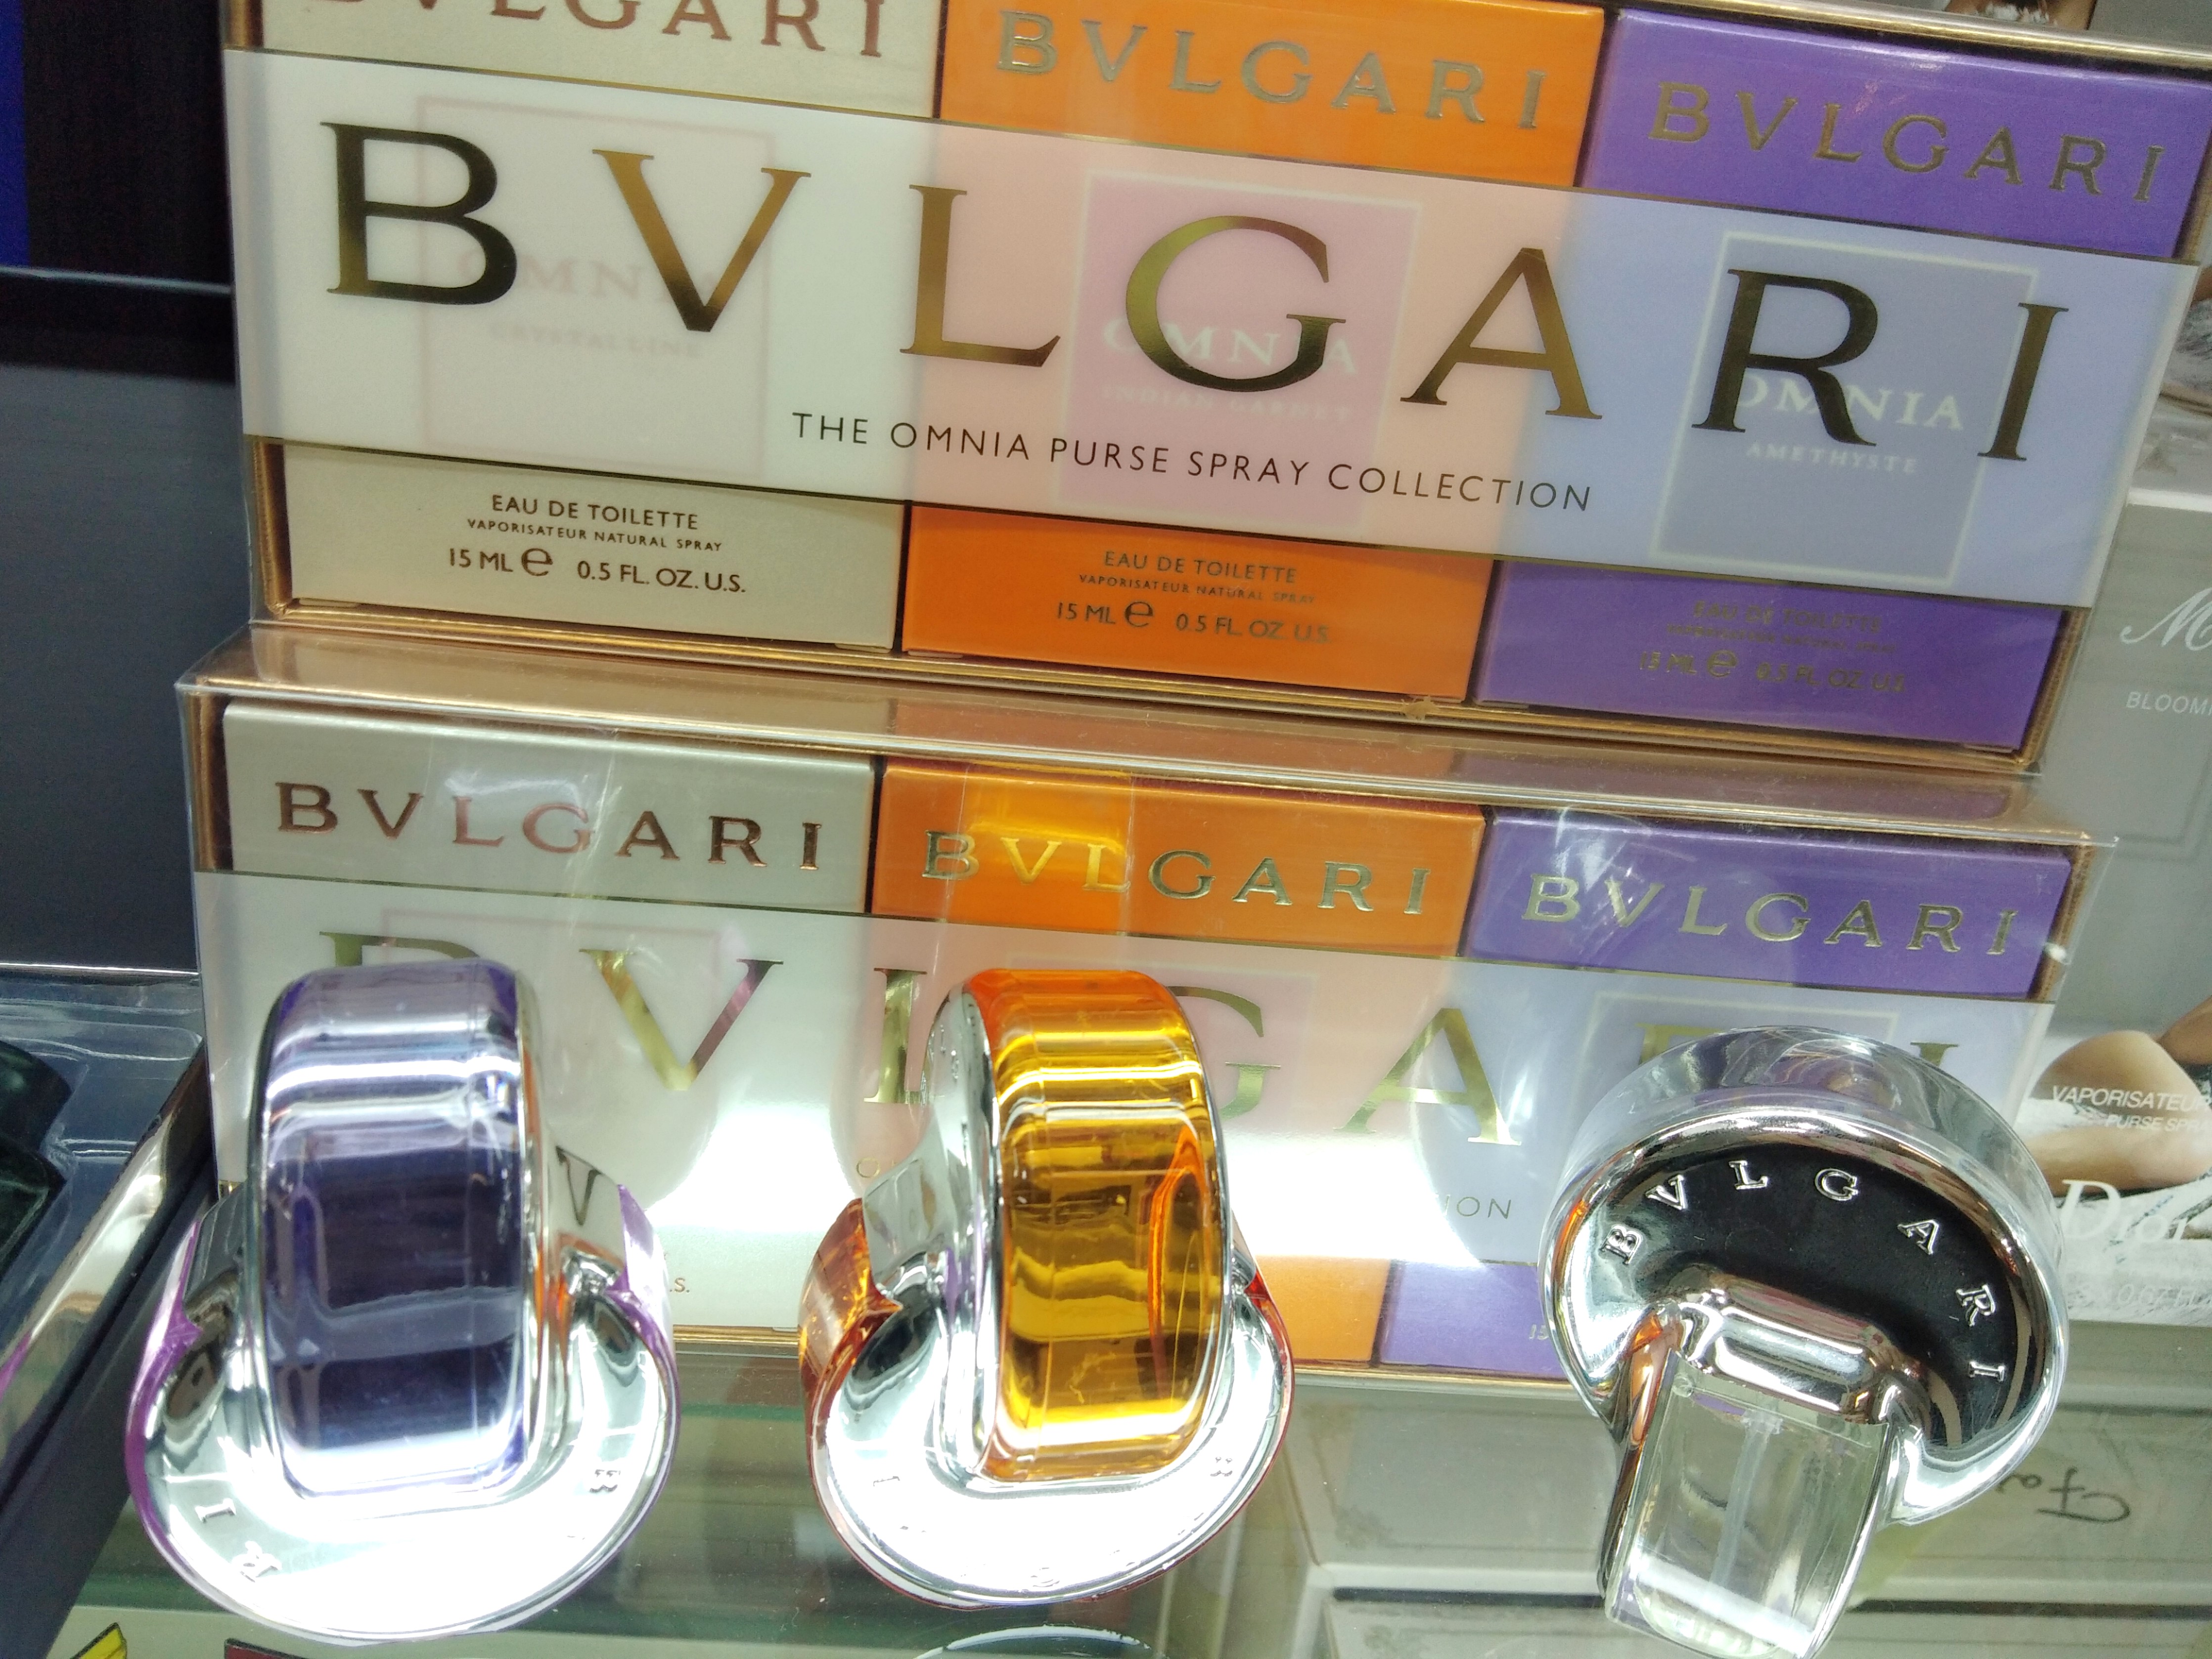 bvlgari purse spray collection